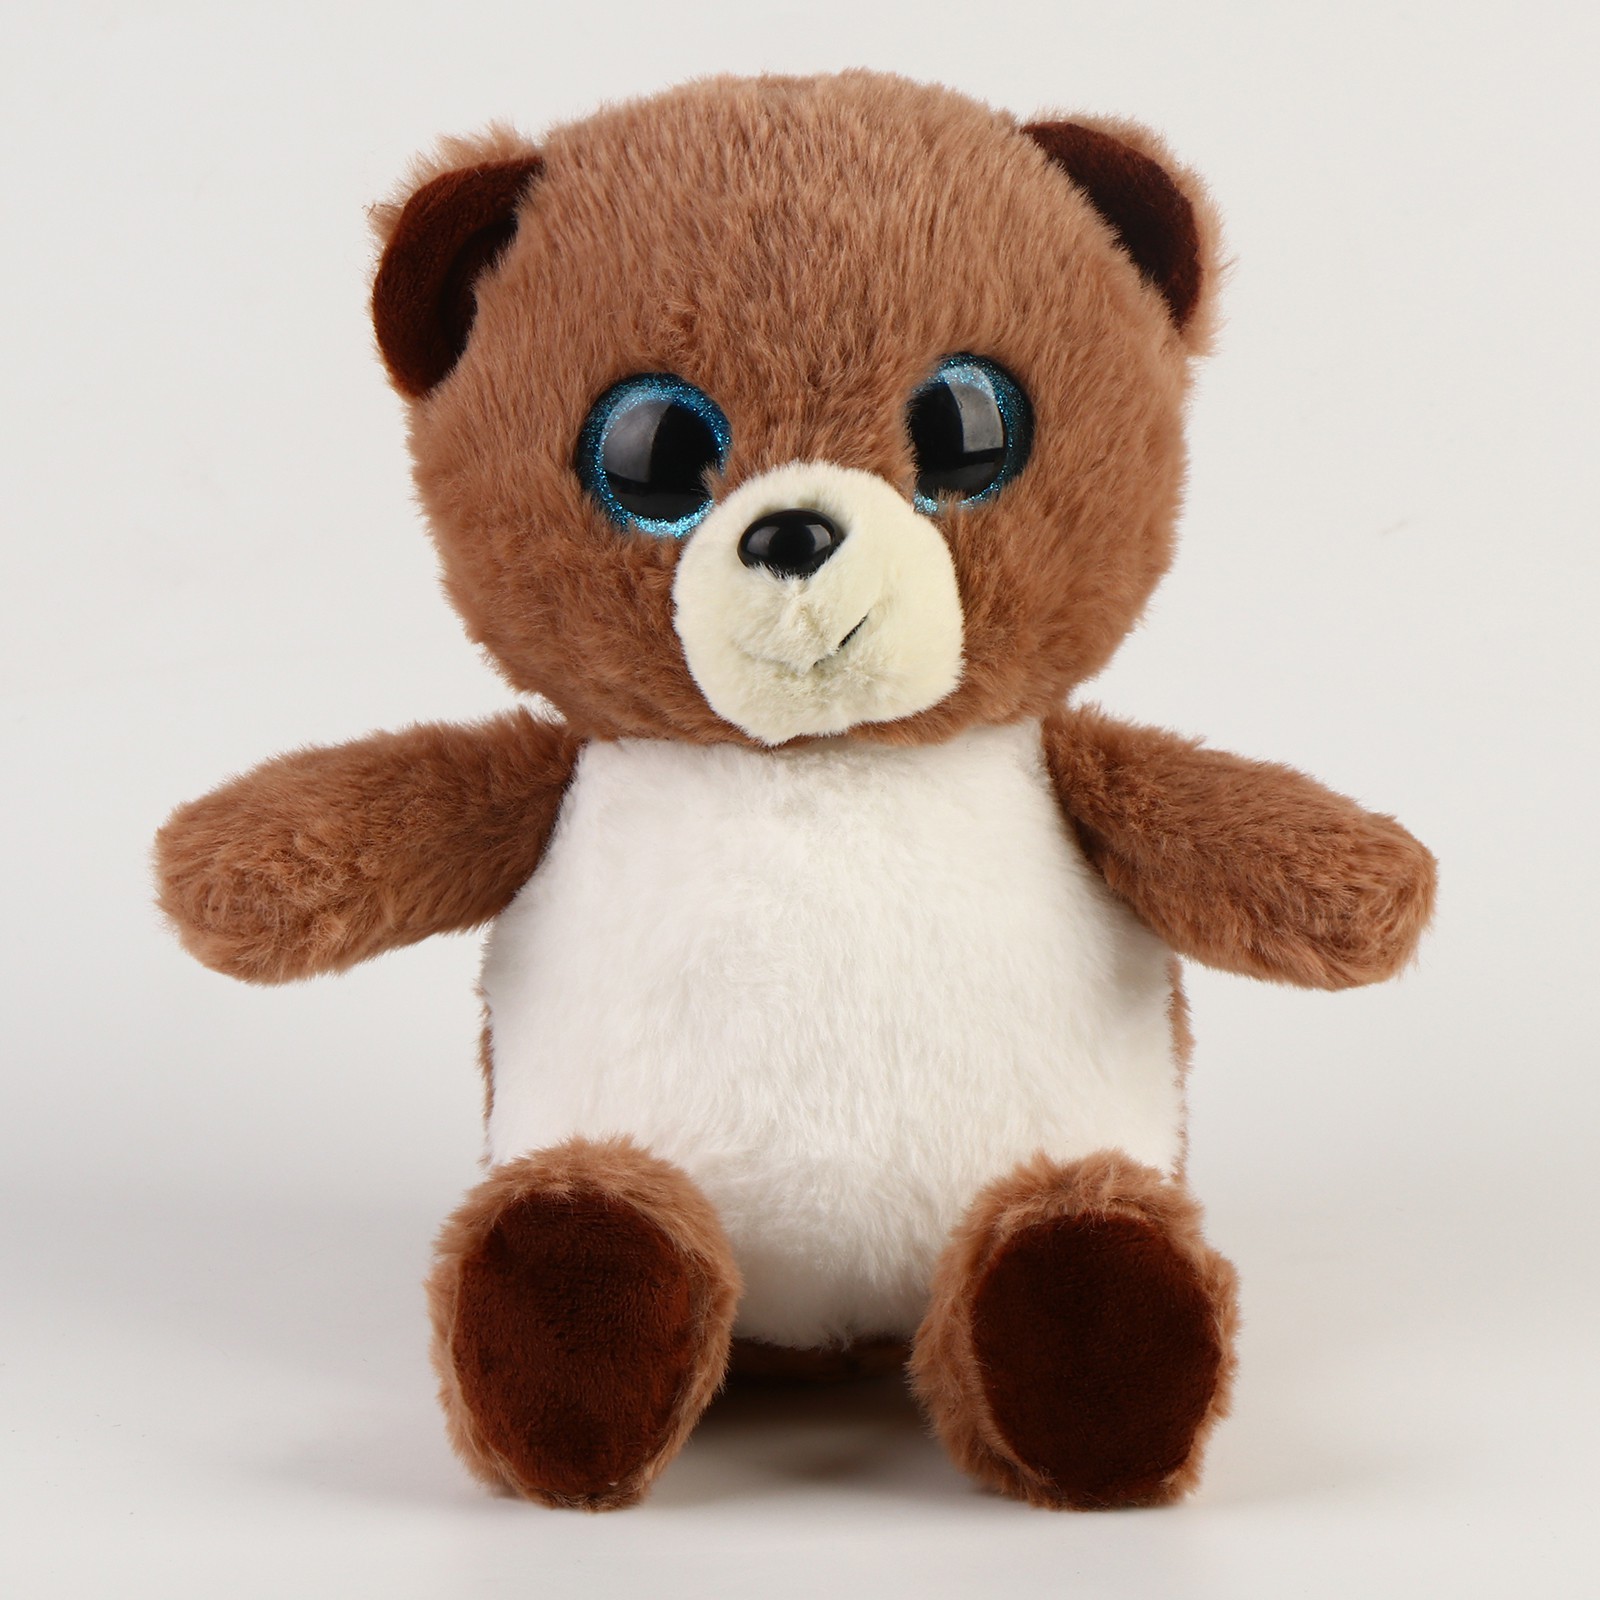 Мягкая игрушка Медвежонок, 9689556, высота 22 см коричневый